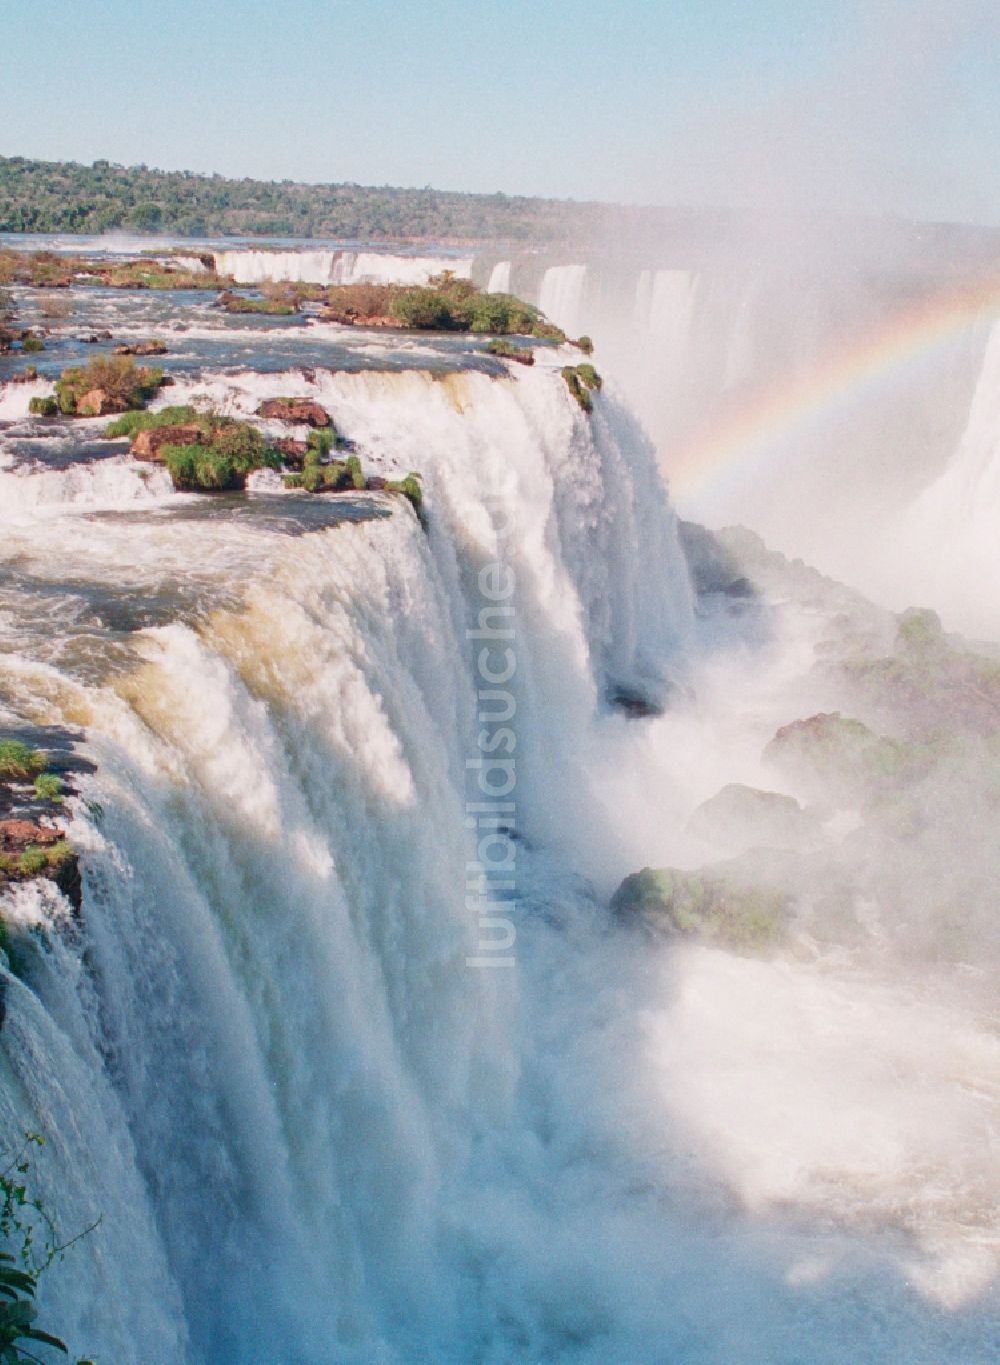 Iguazu aus der Vogelperspektive: UNESCO-Welterbe Wasserfall der Iguazu- Wasserfälle in der Provinz Parana in Brasilien